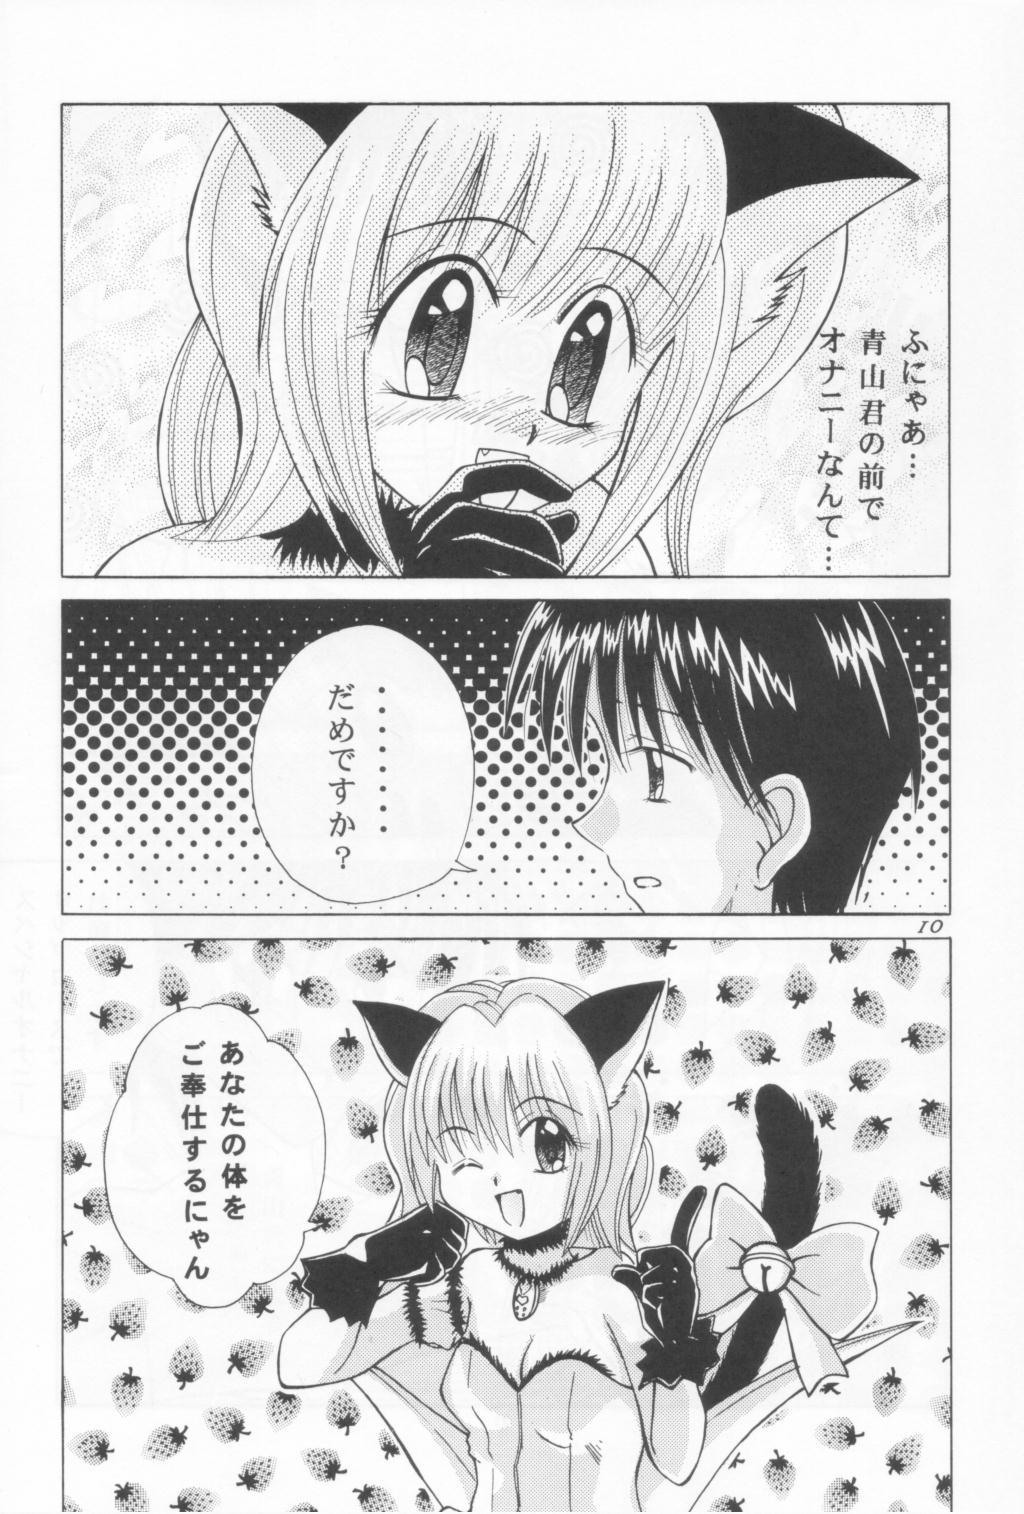 Licking Tokyo Nekomusume - Tokyo mew mew Moan - Page 9